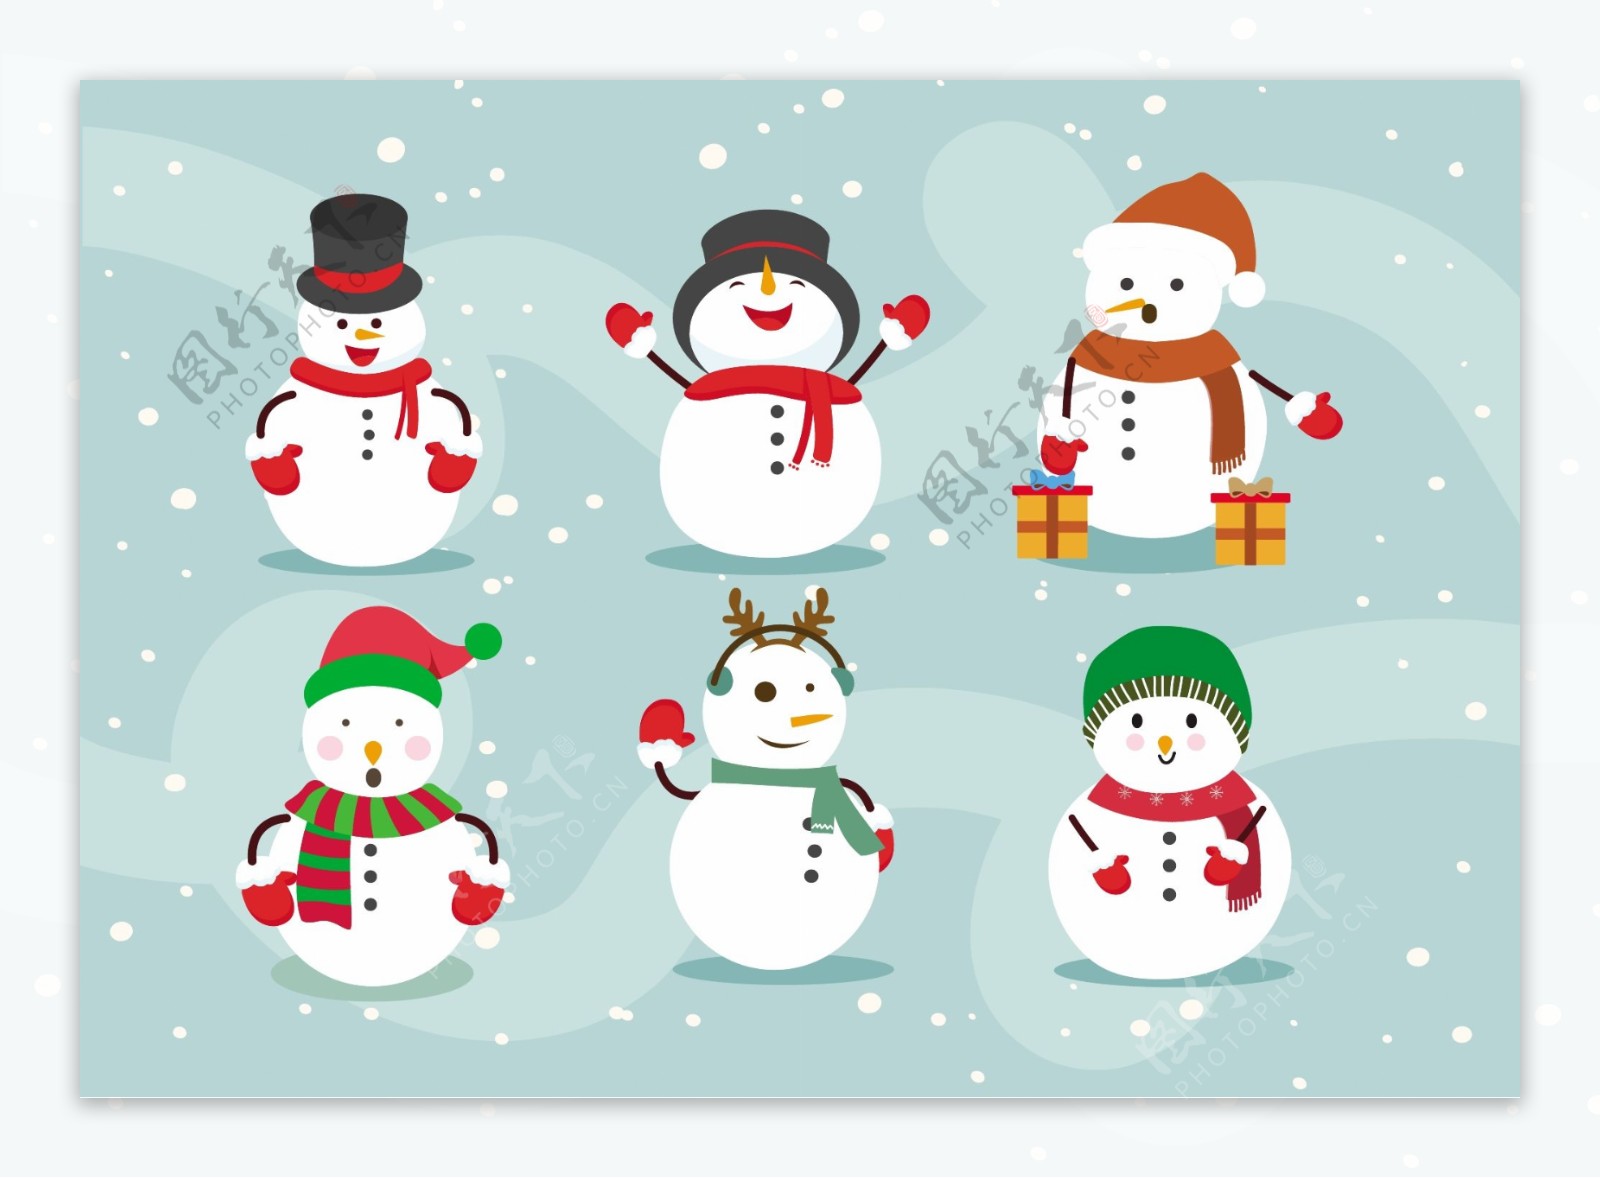 圣诞插图与各种设计元素构成雪人自由向量